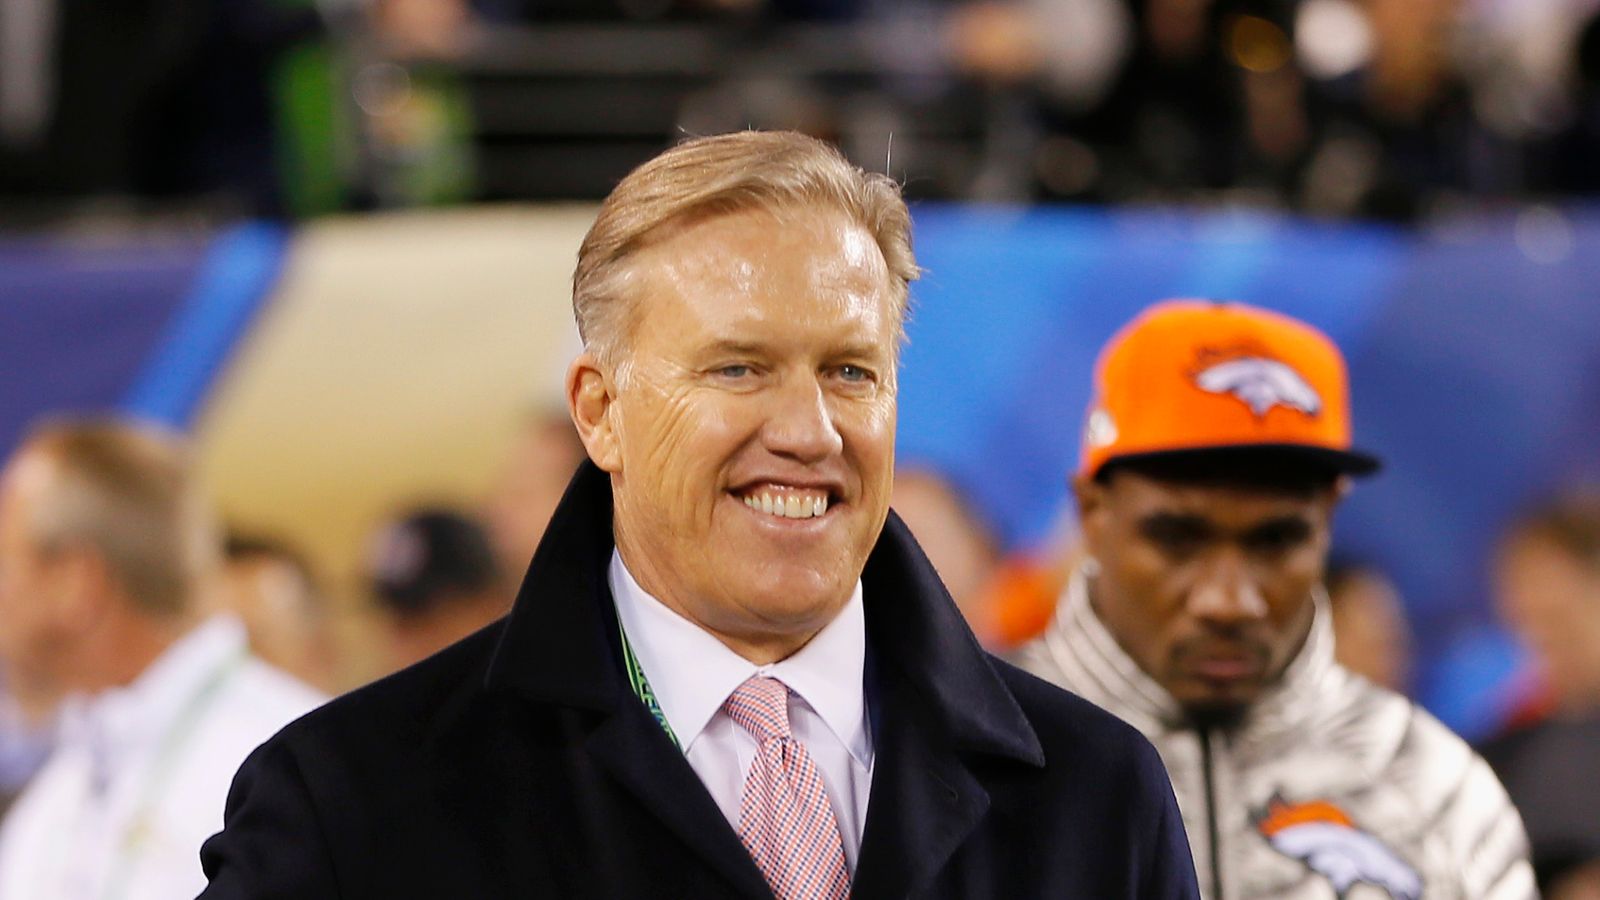 NFL: John Elway agrees new deal with Denver Broncos including